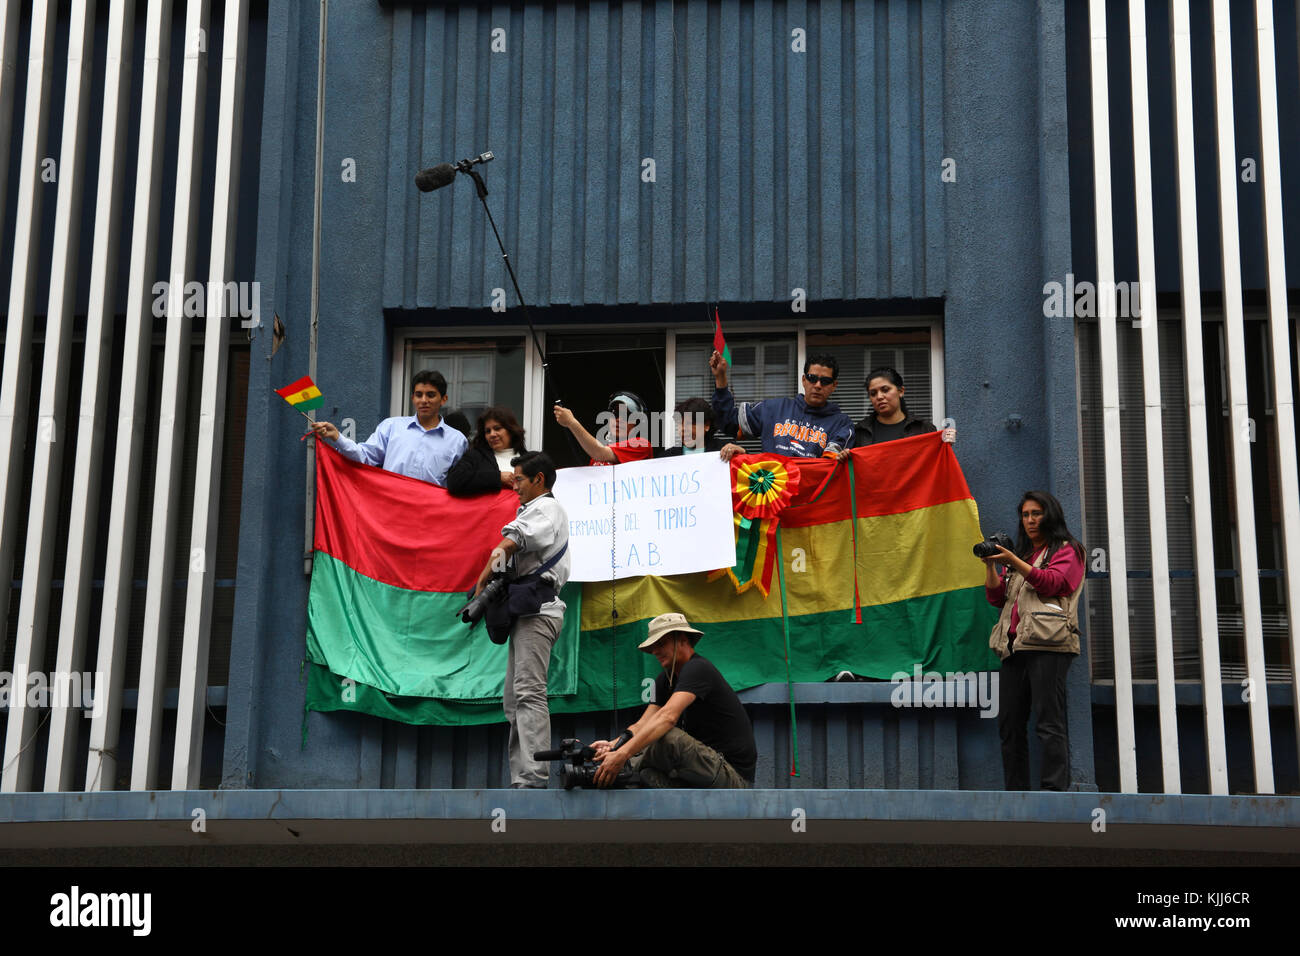 Travailleurs de la presse sur un balcon comme le VIII Mars dans la défense de la TIPNIS (qui quitté Trinidad le 15 août 2011) arrive à La Paz, Bolivie Banque D'Images